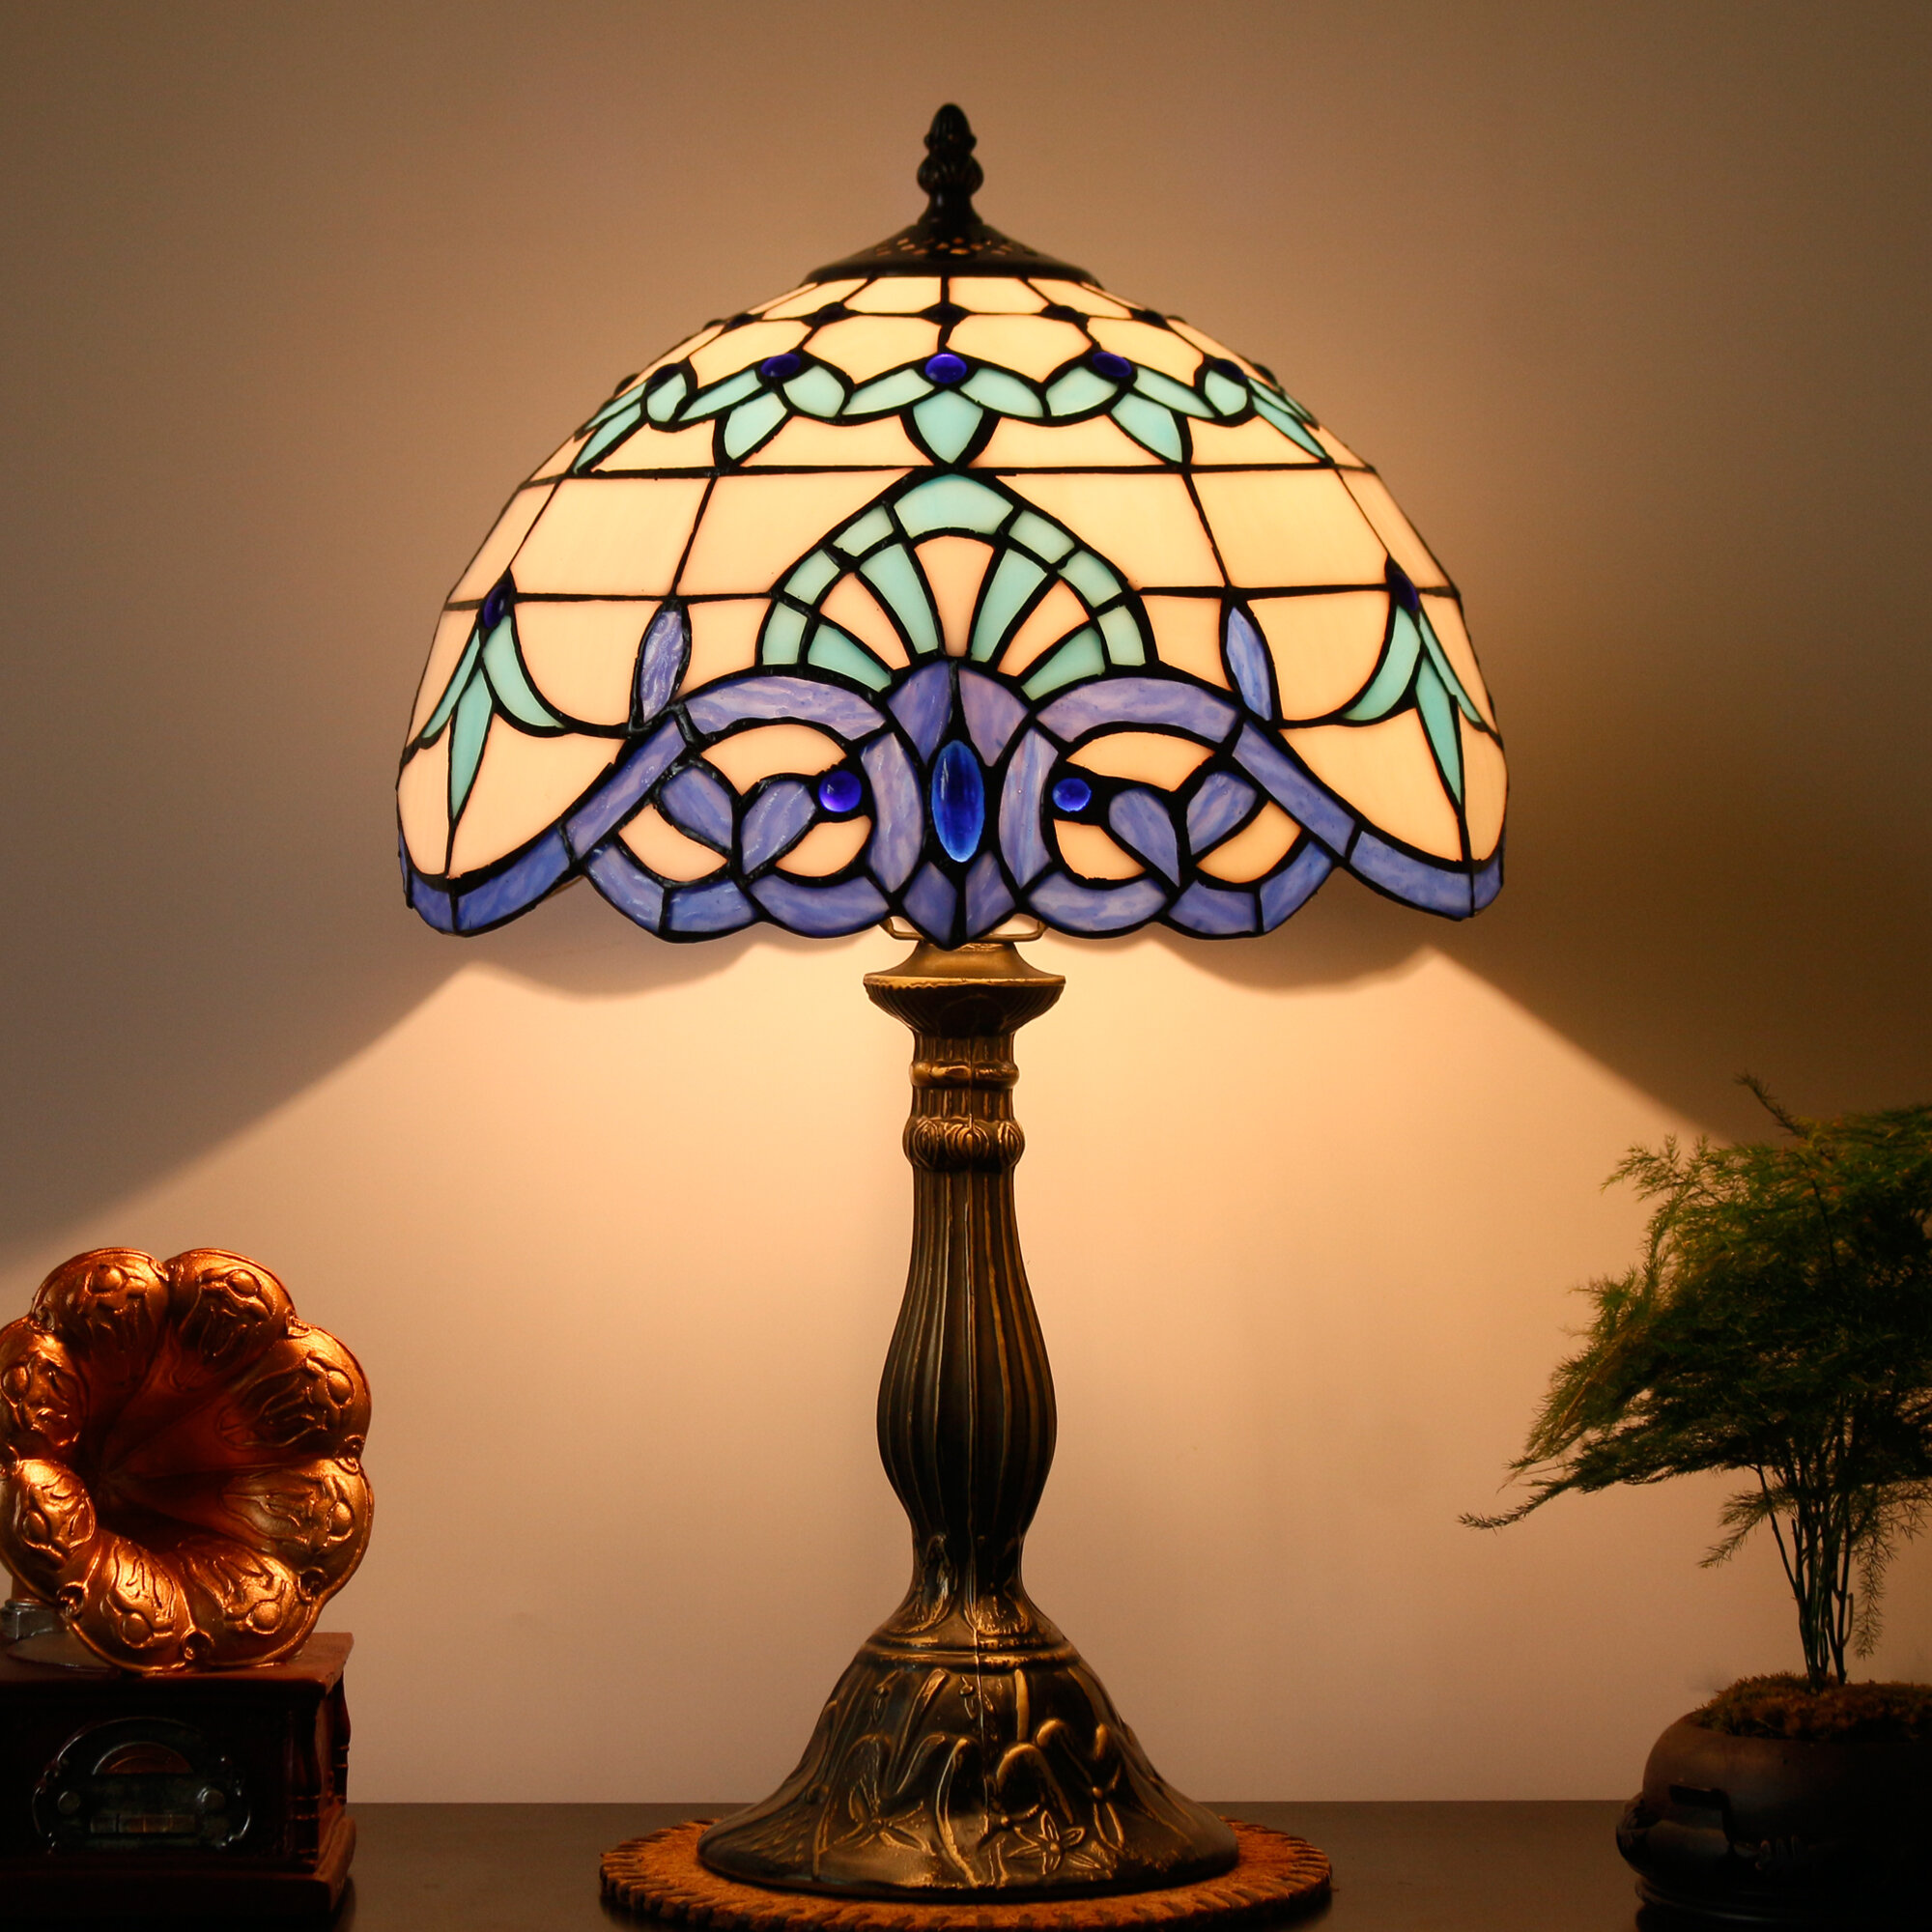 Lampe de table sans fil pour banquier, lampe de bureau de